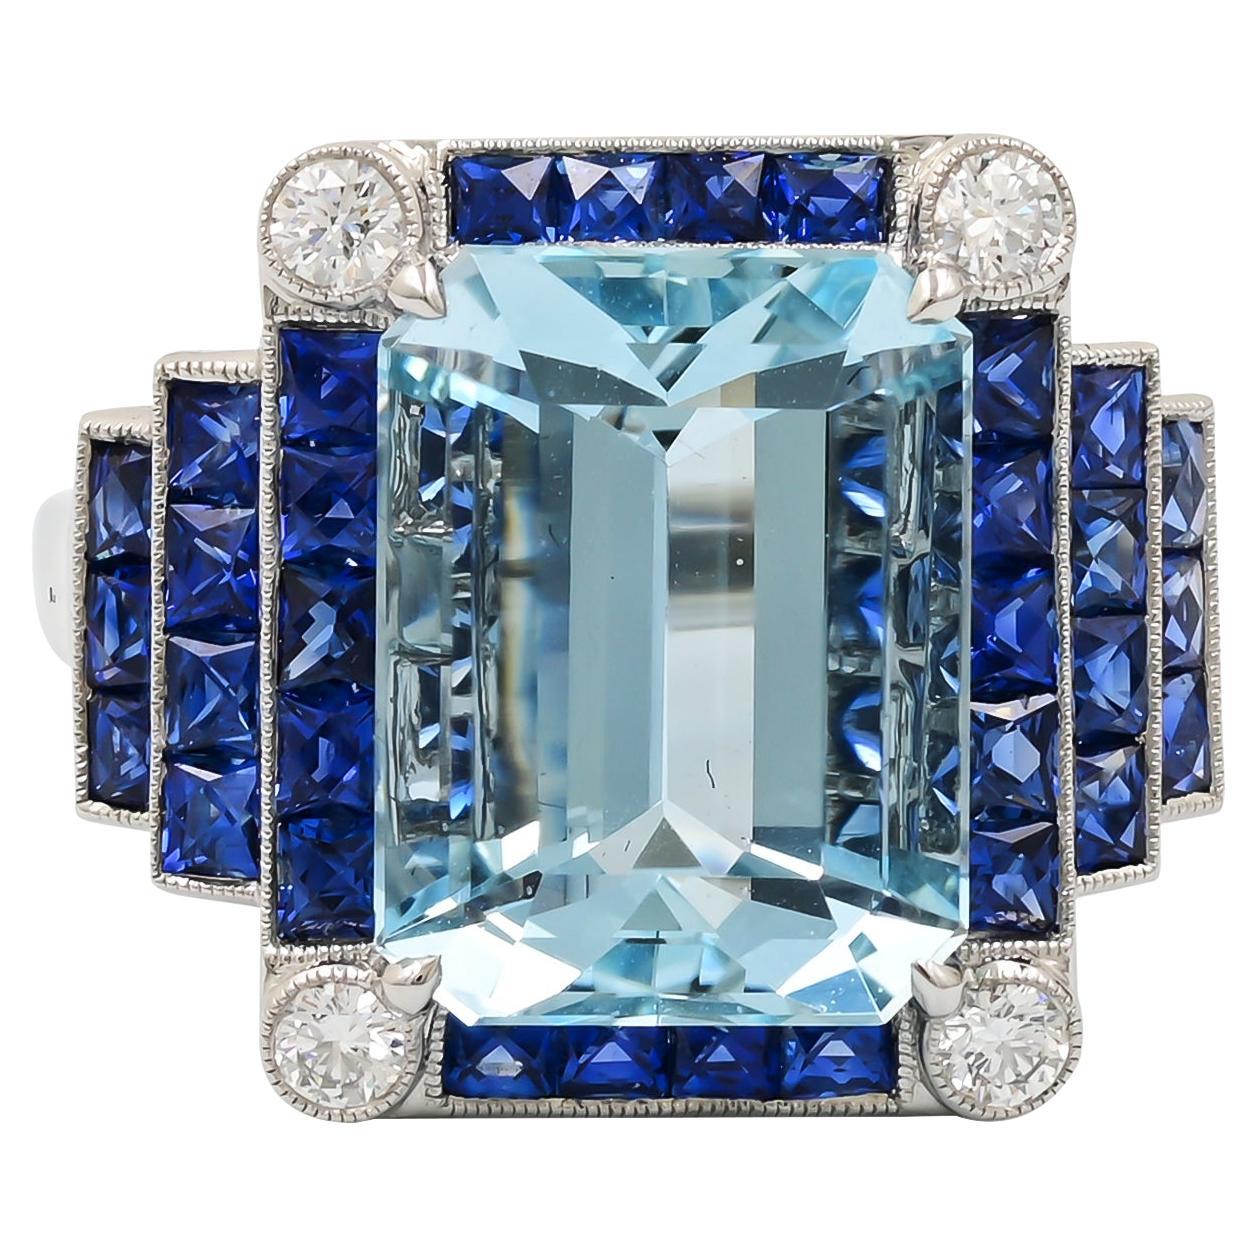 Sophia D. 5.46 Carat Aquamarine with Blue Sapphires and Diamonds Art Deco Ring